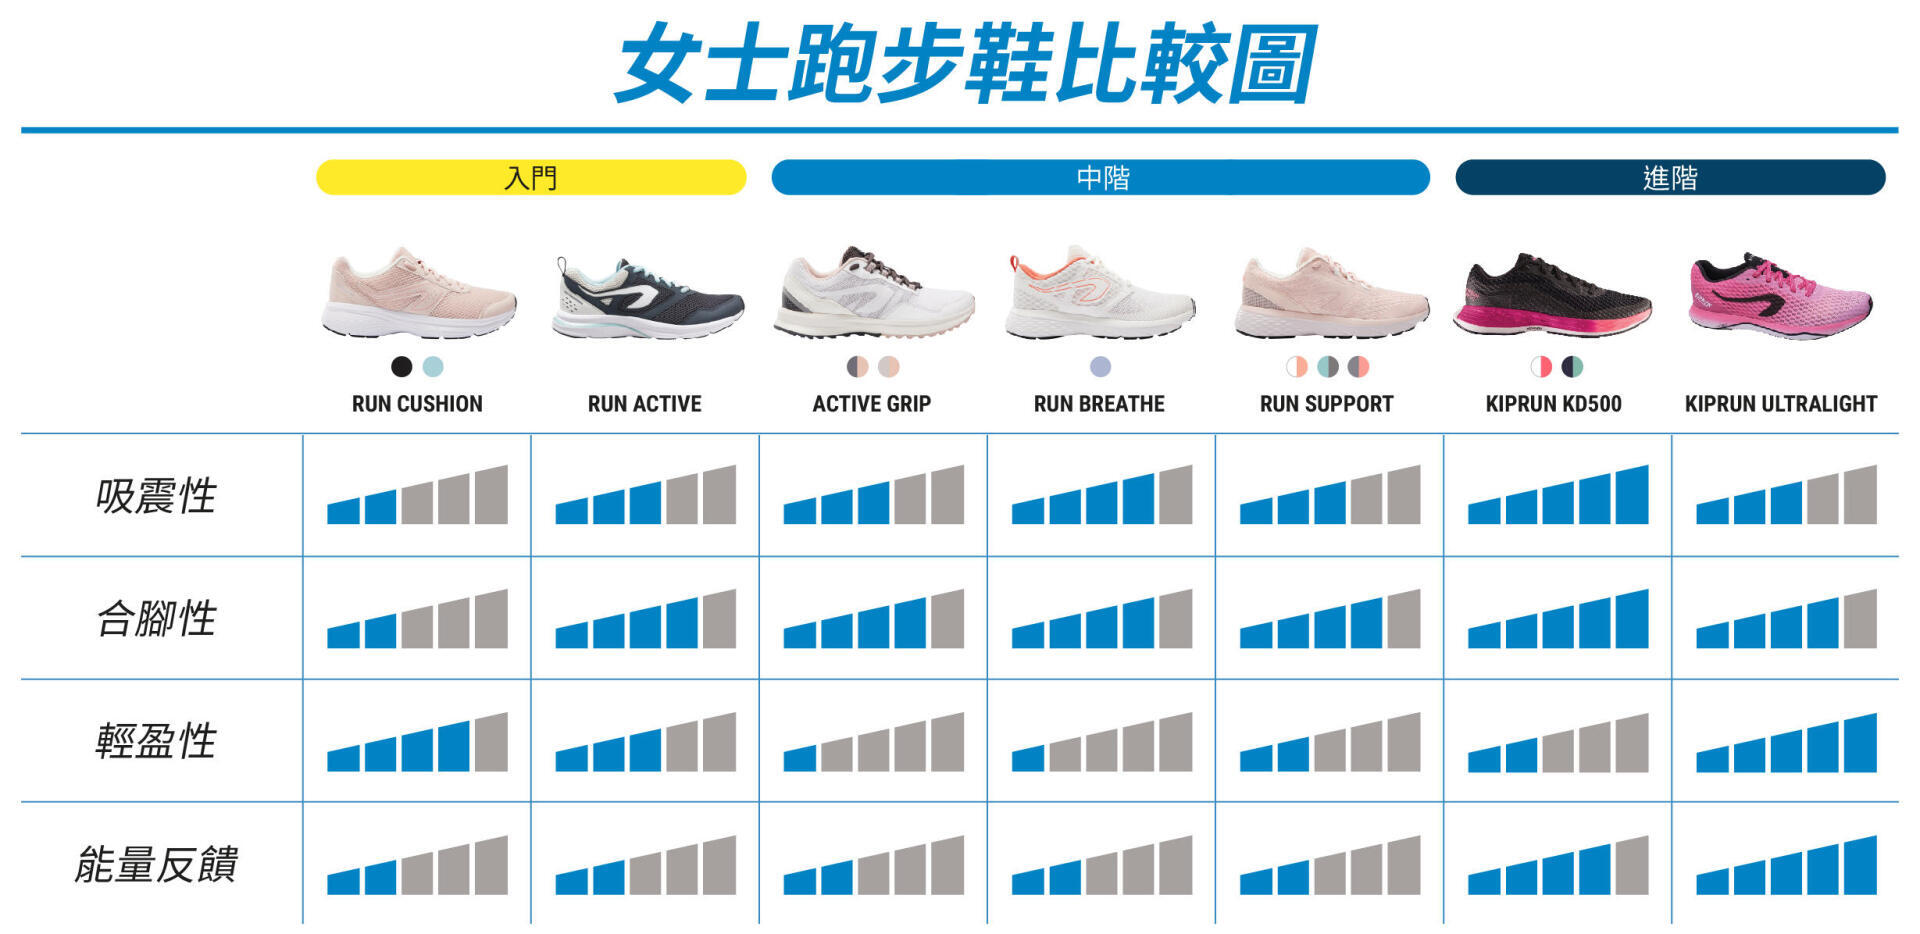 RUNNING Women Running Shoes Comparison Chart